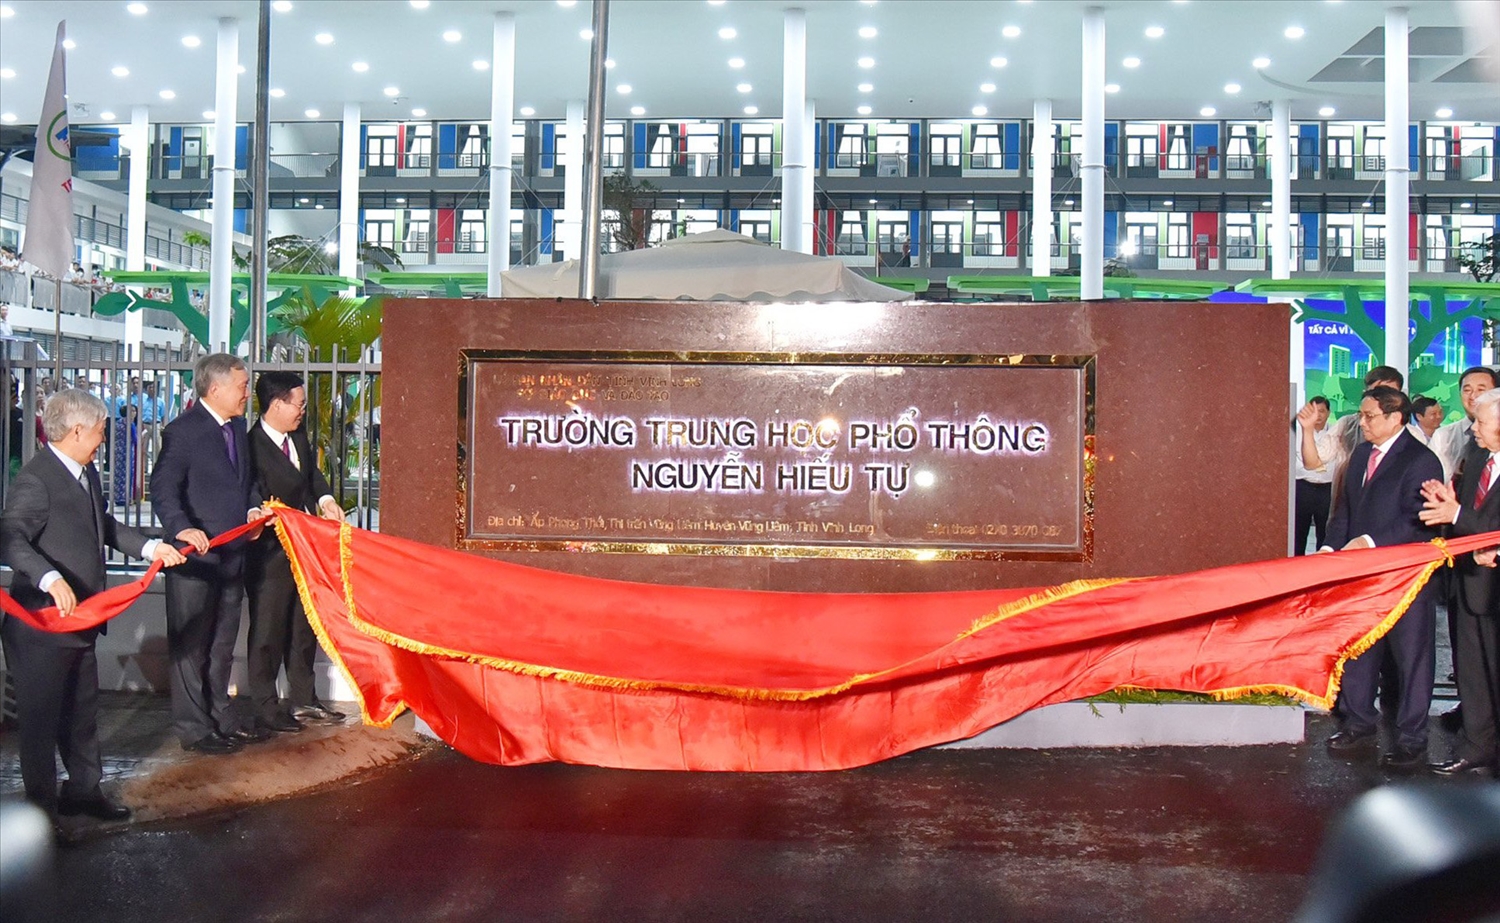 Thủ tướng Phạm Minh Chính cùng đoàn đại biểu Đảng, Nhà nước Khánh thành Trường THPT Nguyễn Hiếu Tự (Vĩnh Long)